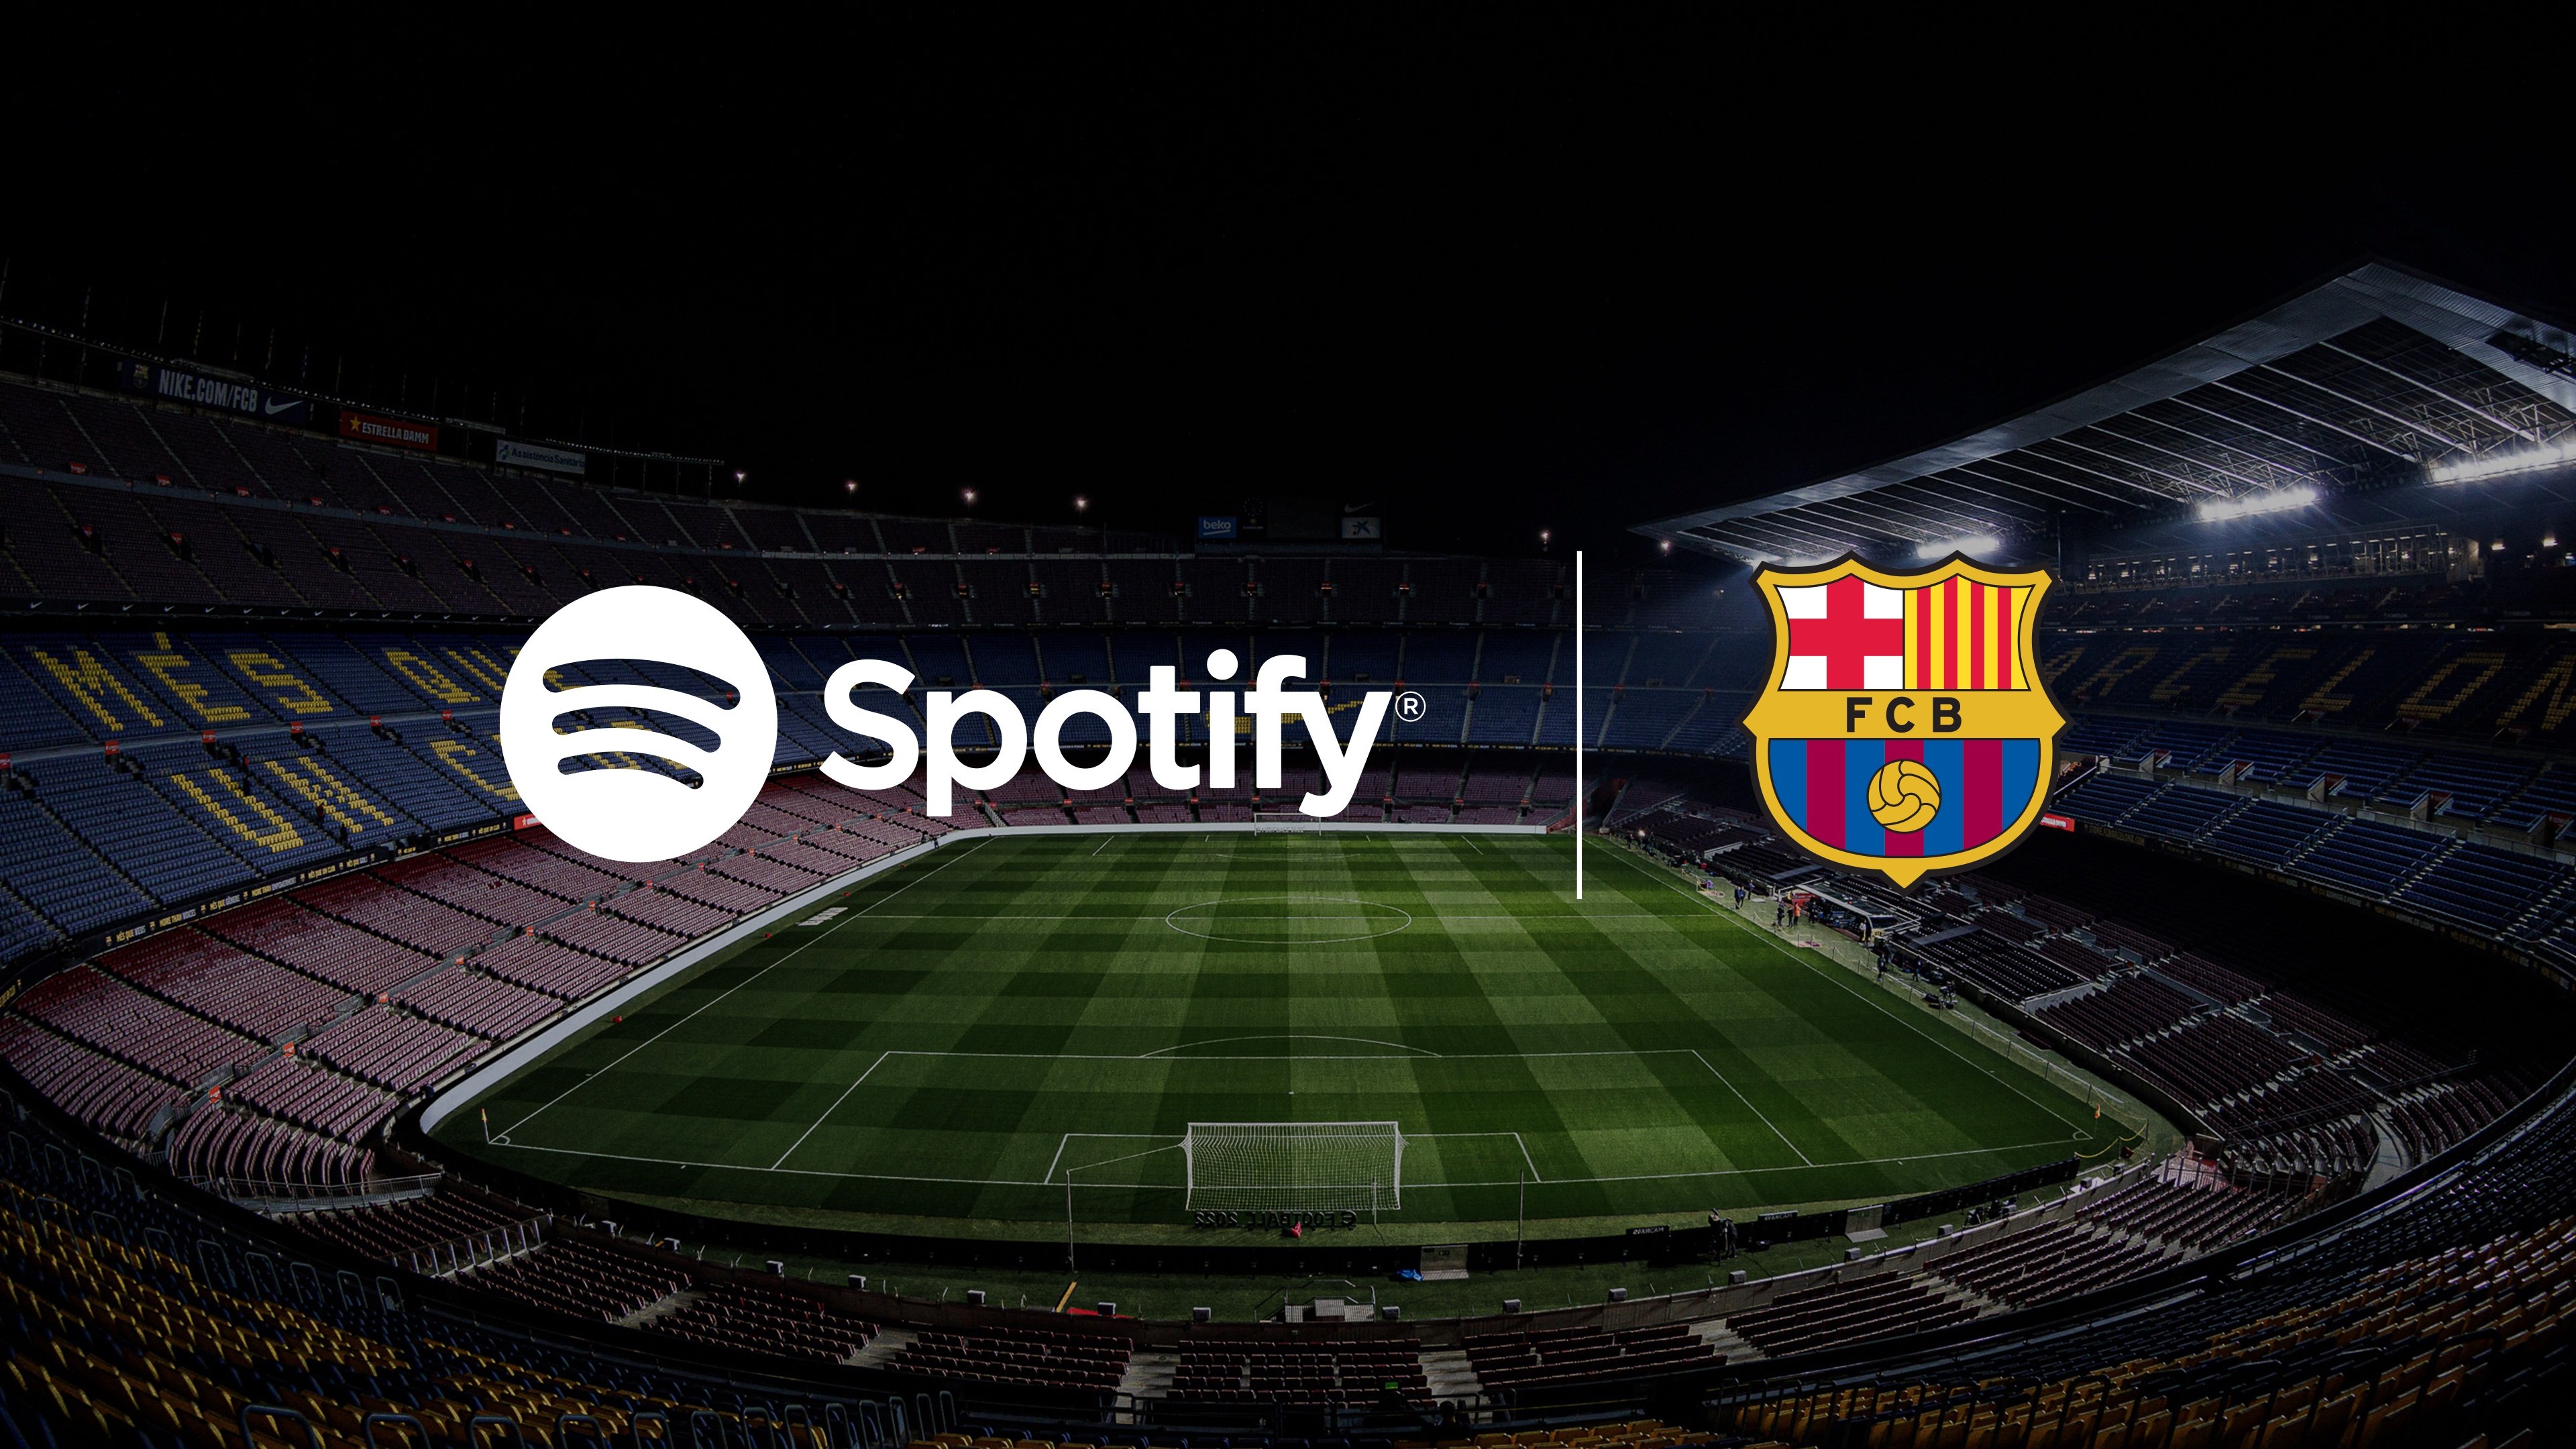 Acuerdo histórico del Barça: Spotify, nuevo patrocinador principal, pondrá nombre al Camp Nou